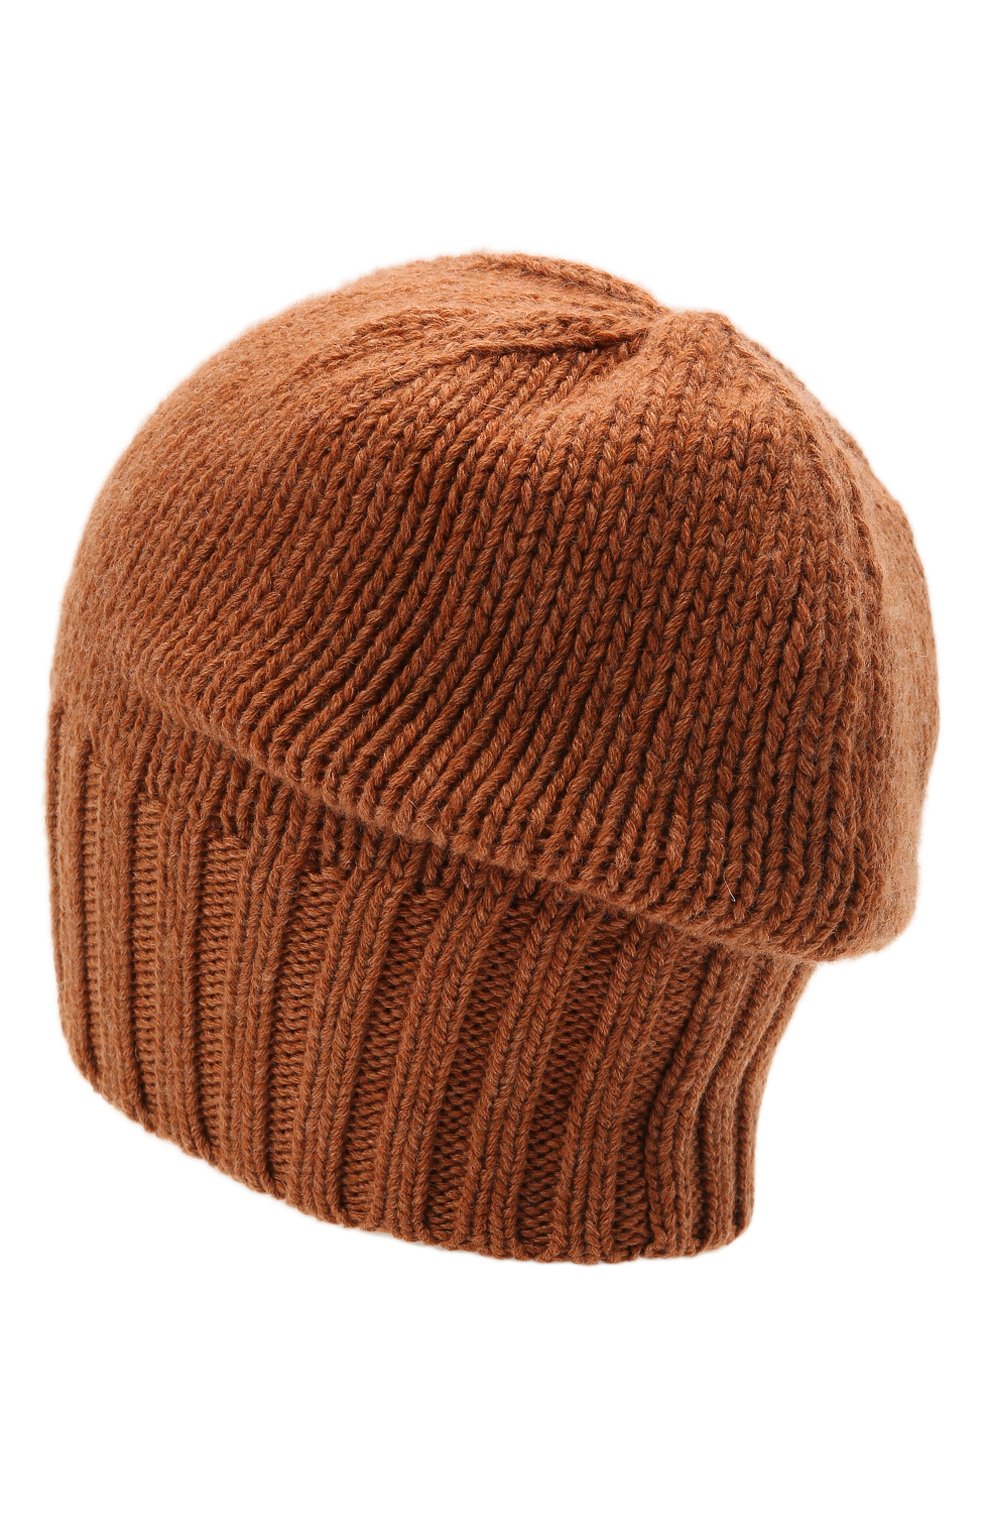 Мужская кашемировая шапка INVERNI светло-коричневого цвета, арт. 4226 CM | Фото 2 (Материал: Текстиль, Кашемир, Шерсть; Кросс-КТ: Трикотаж)